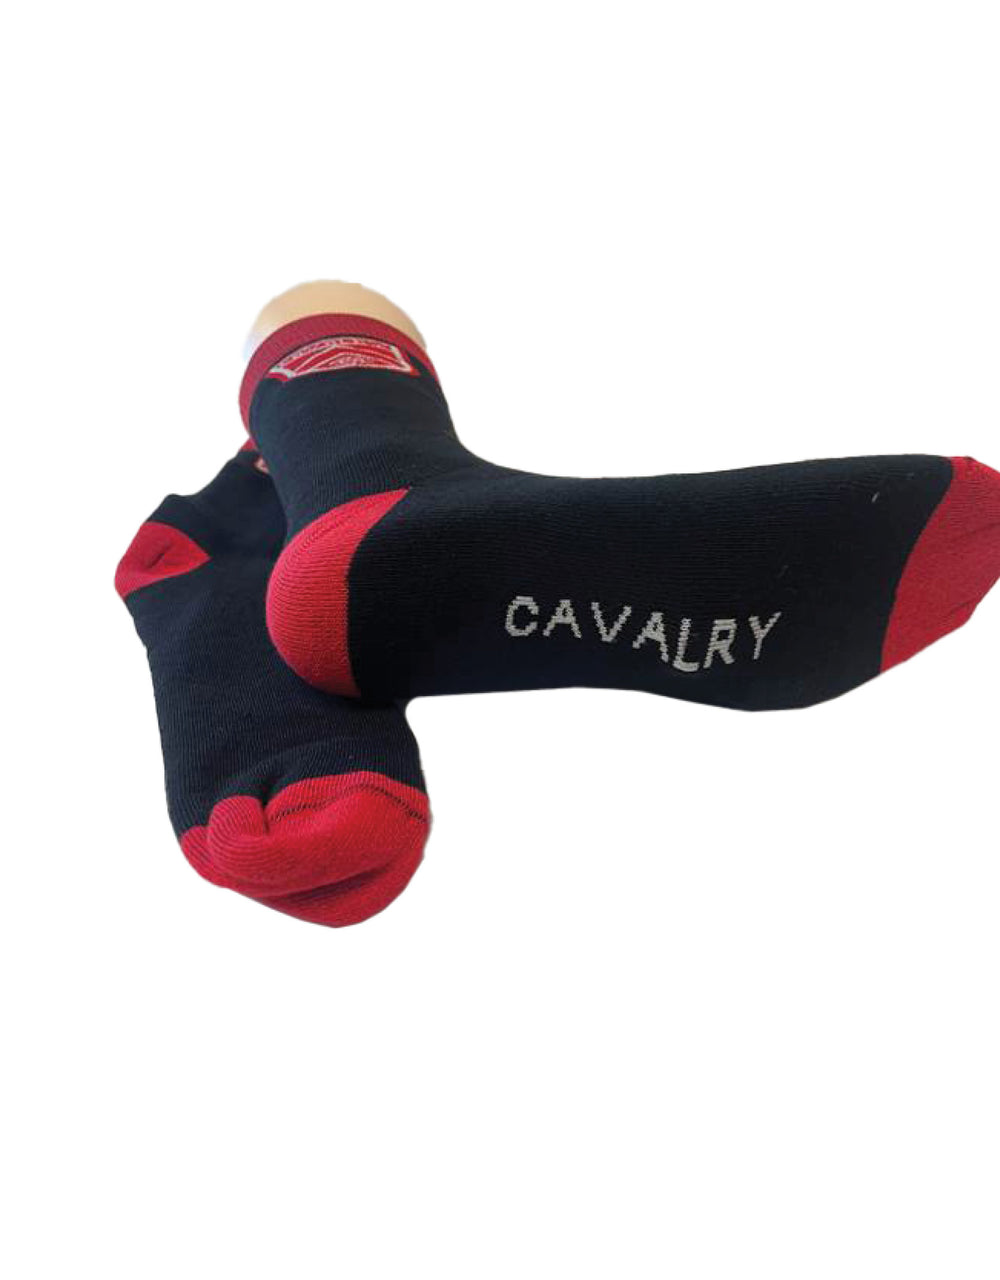 Cavalry Crew Socks